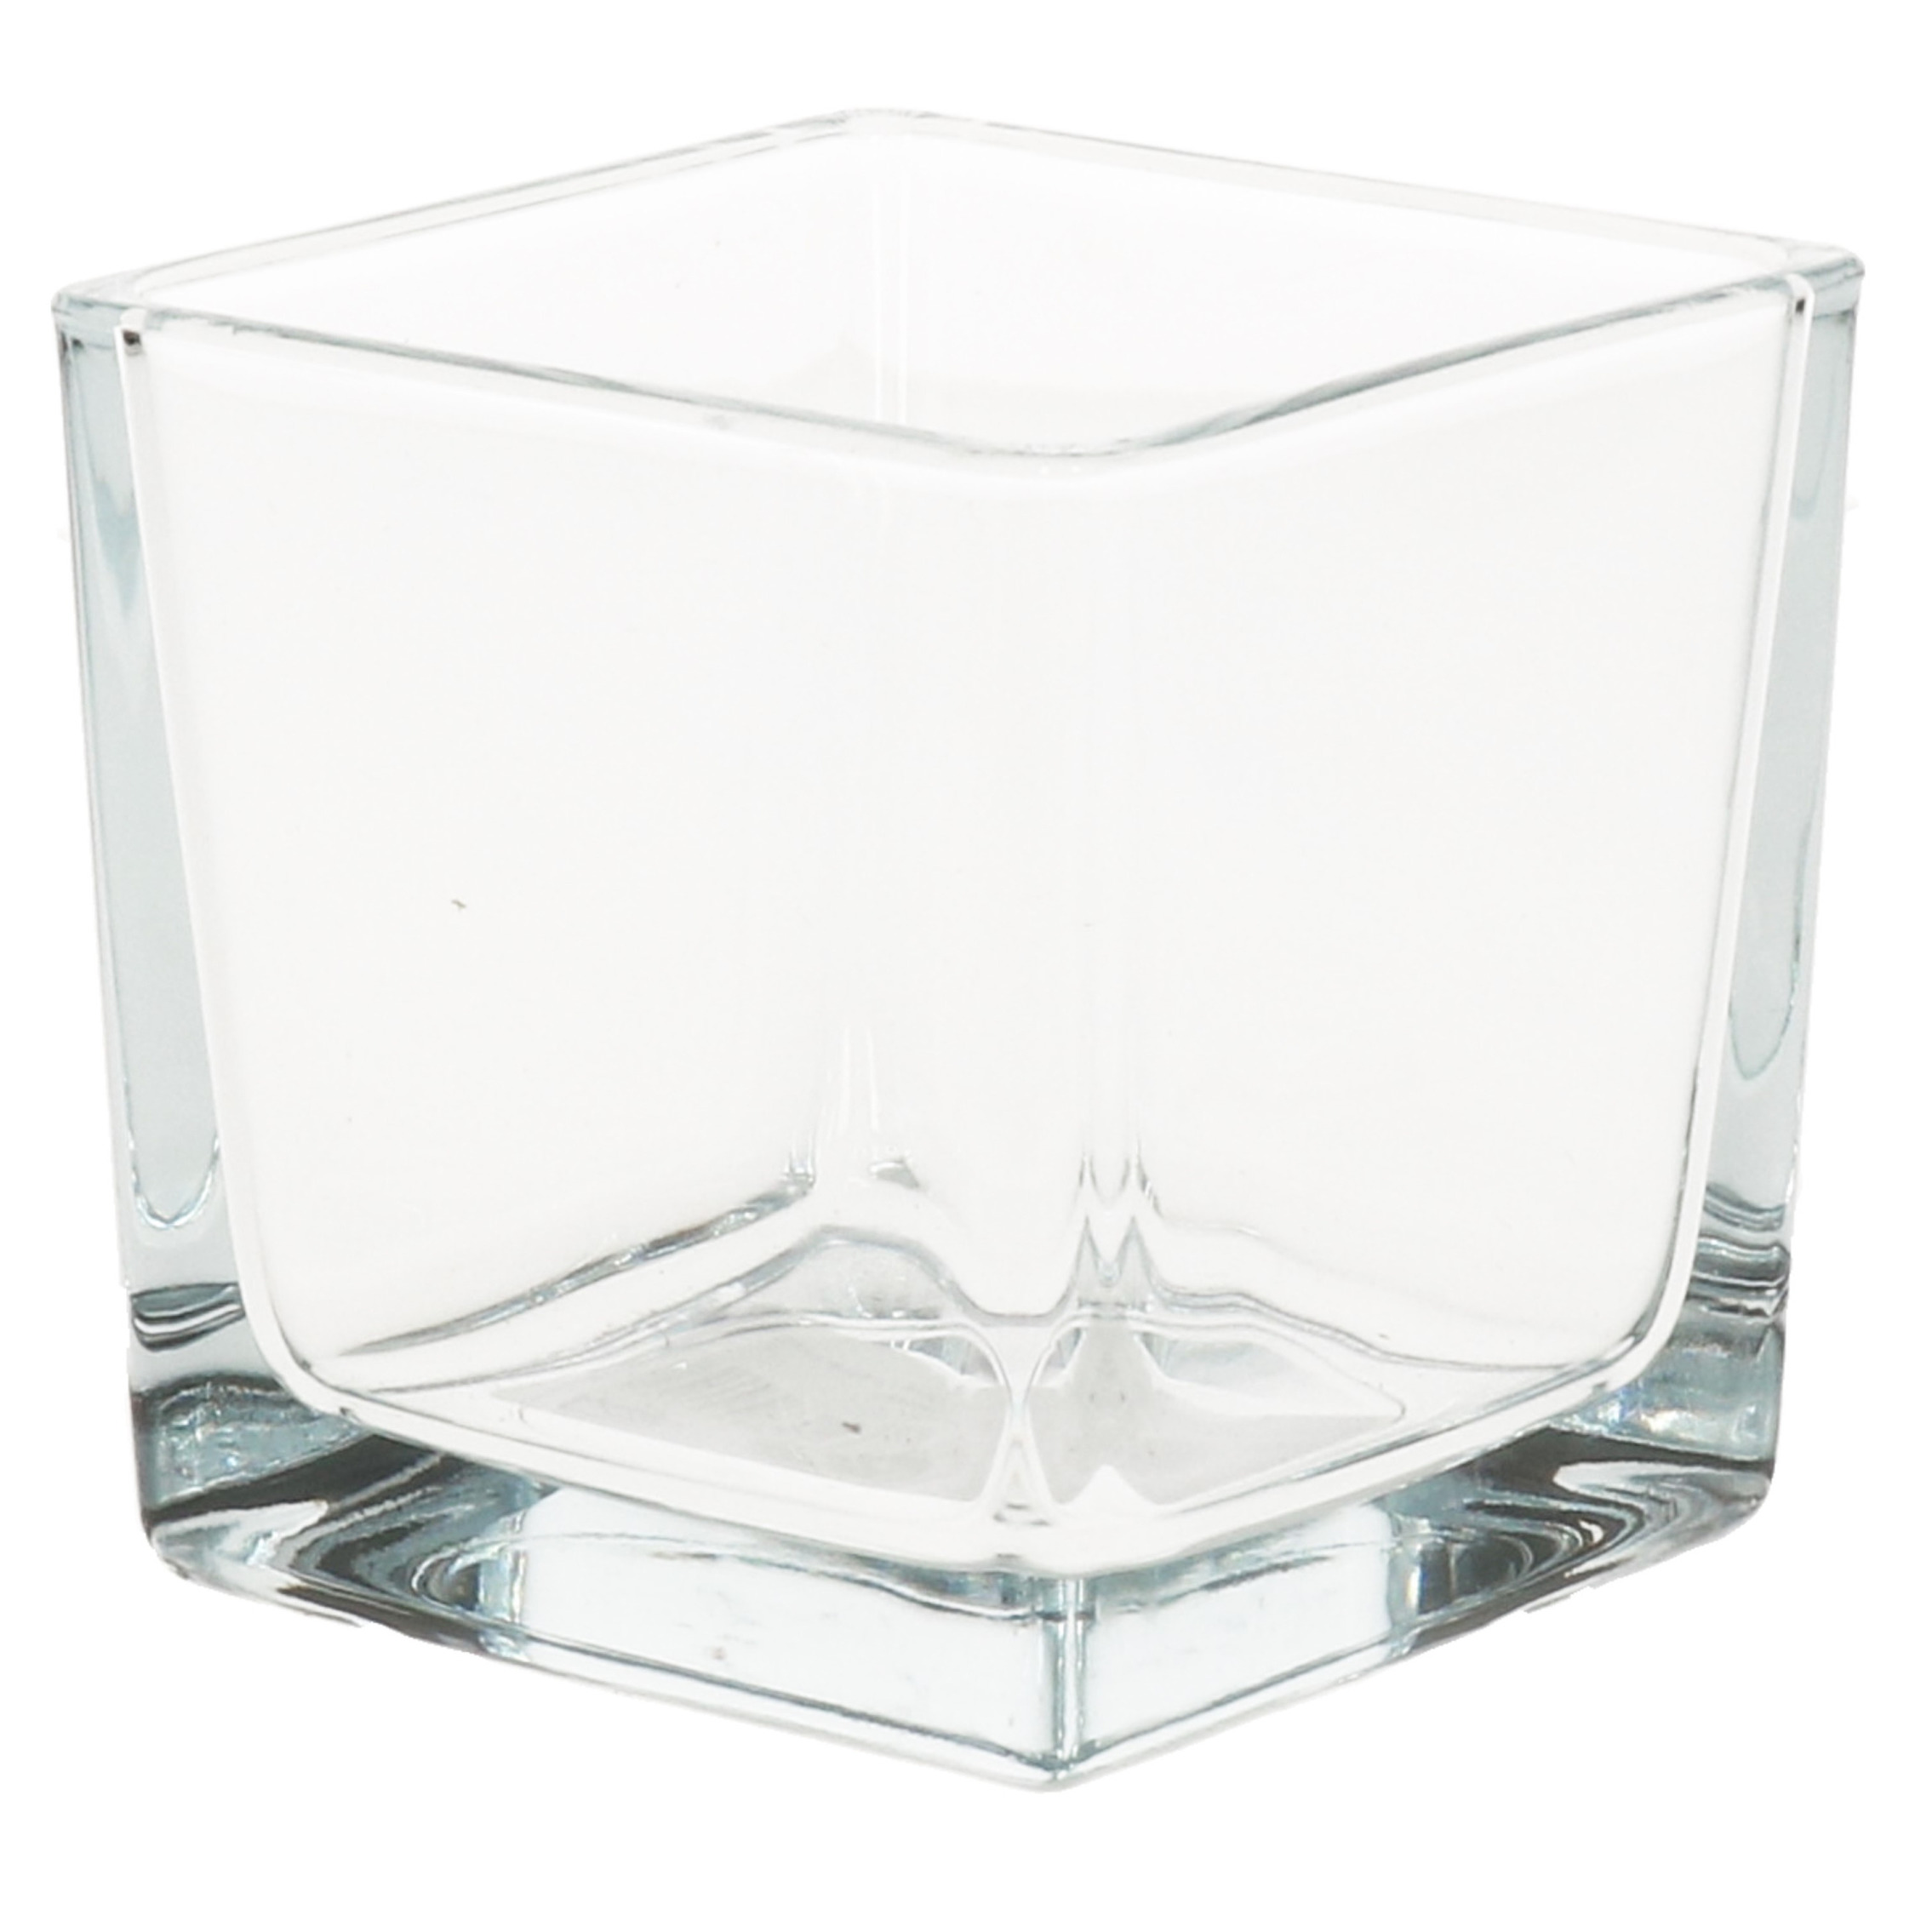 1x Decoratie theelichten-waxinelichten houder 8 x 8 cm vierkant glas